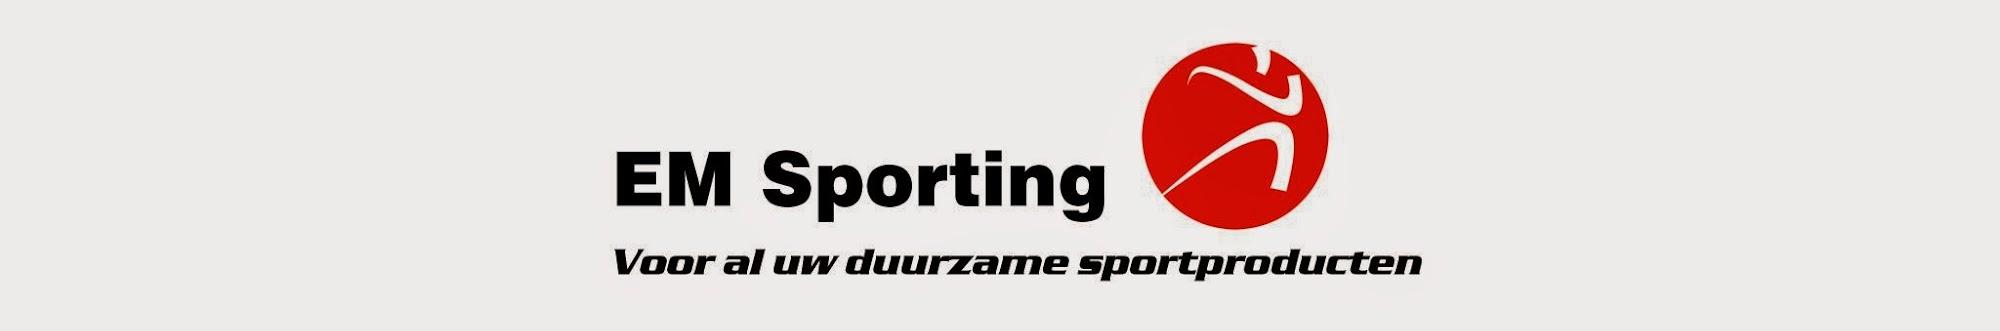 EM Sporting